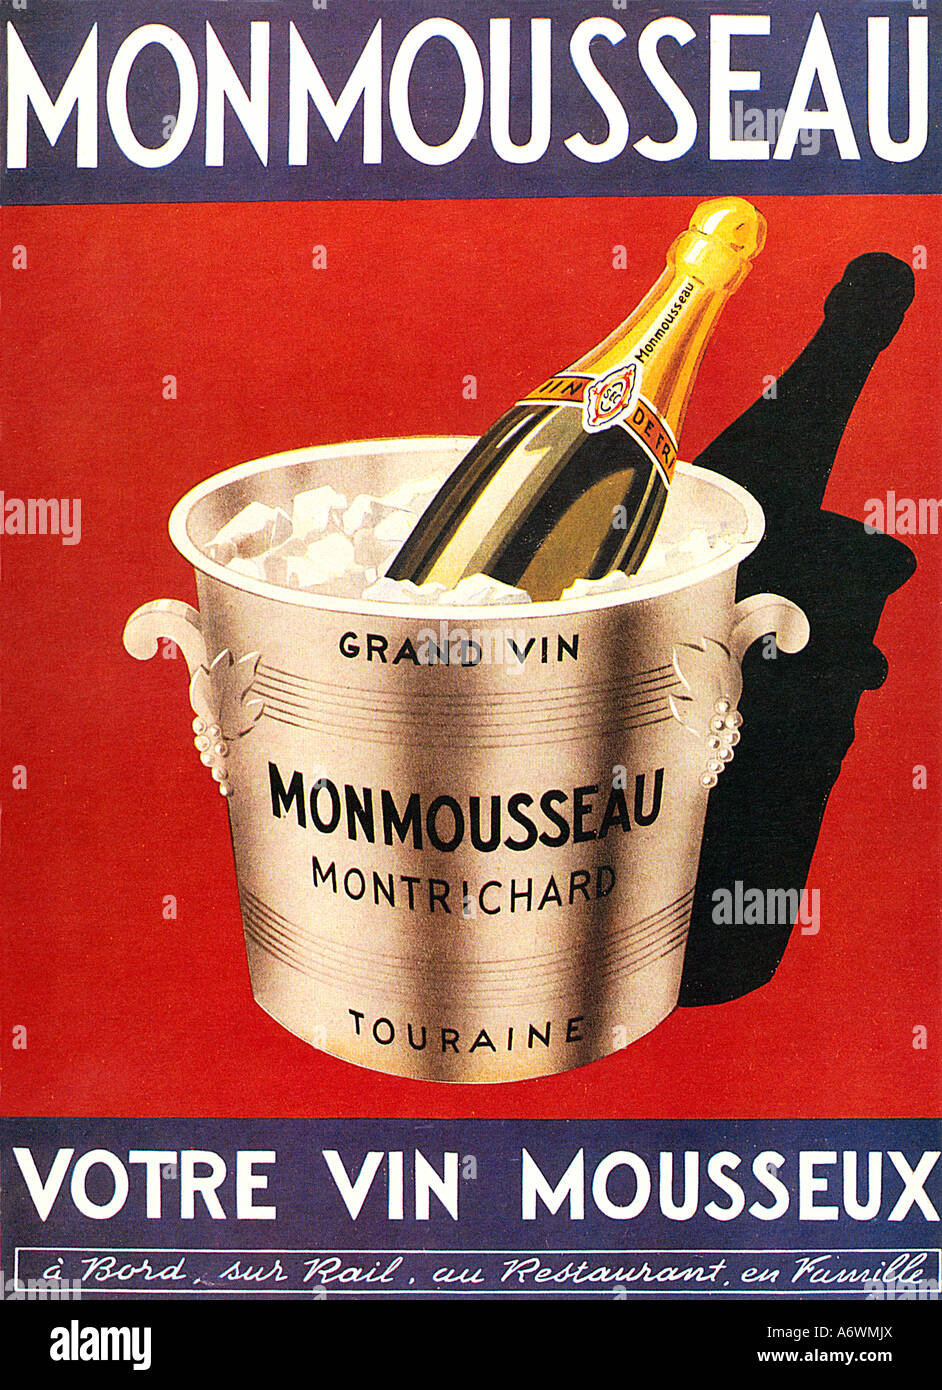 Monmousseau 1940 affiche pour le vin mousseux français de la Loire produit par la méthode champenoise Banque D'Images